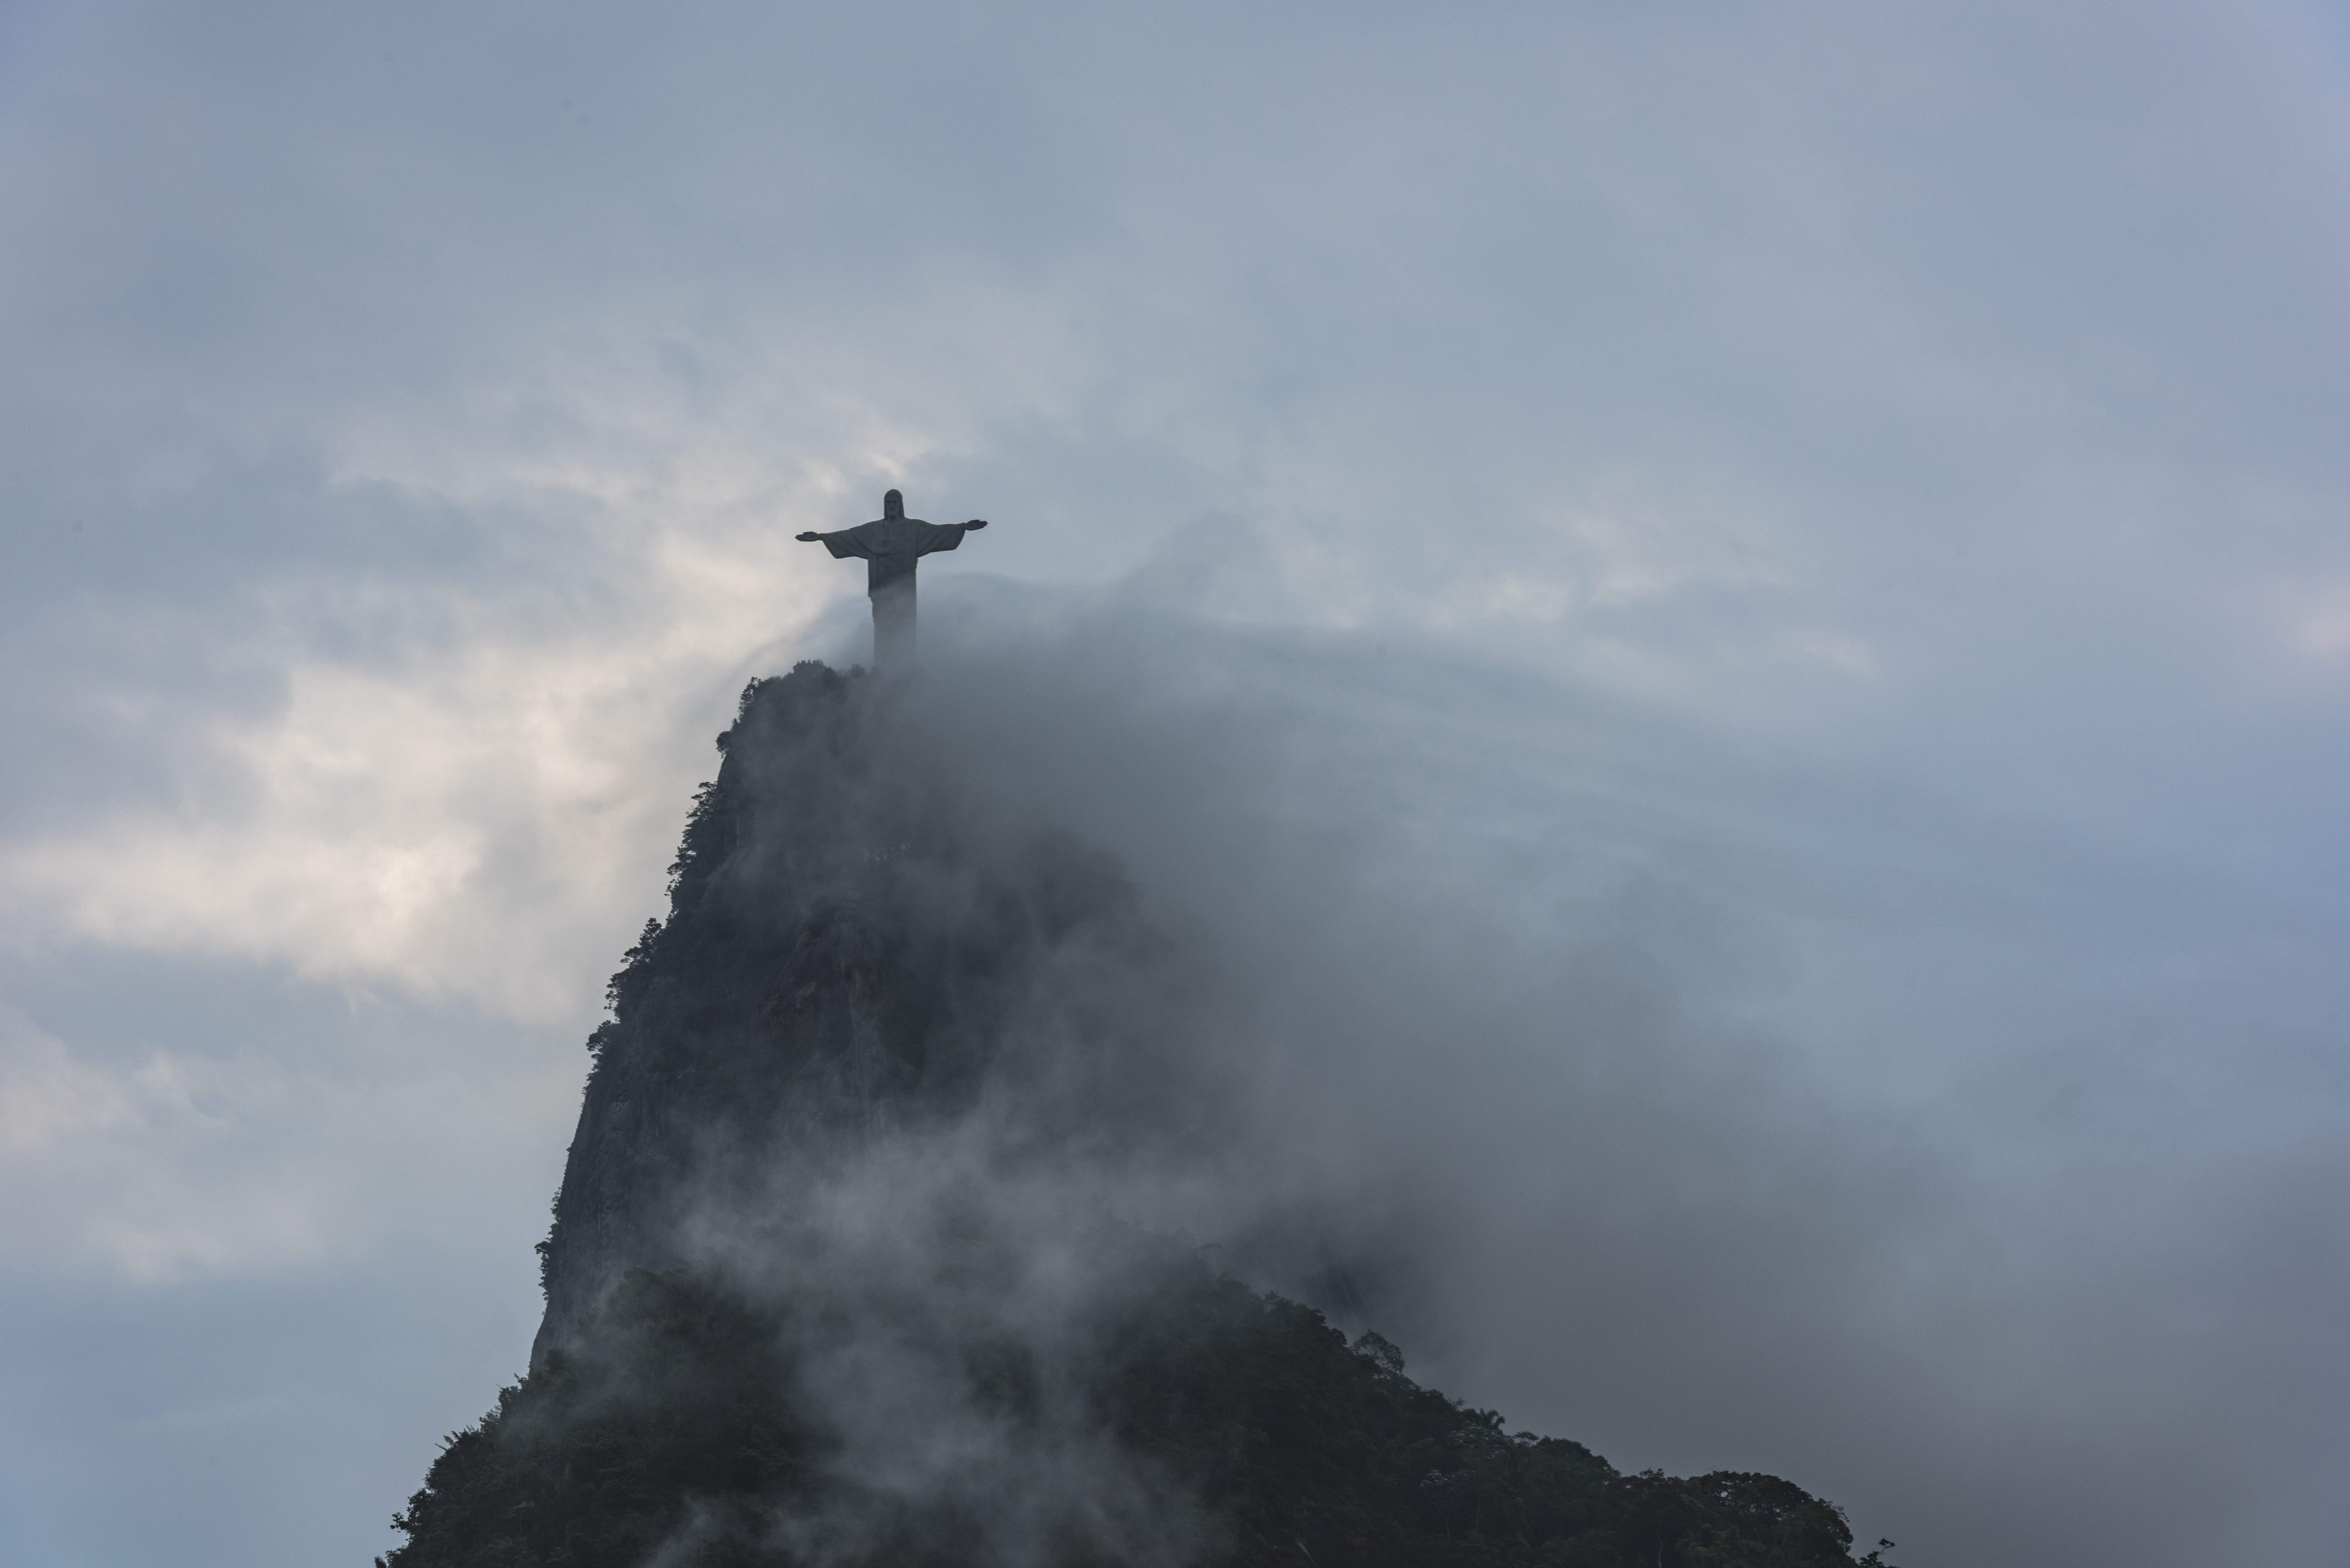 今晚巴西队即将开赛,让里约的基督像为他们祝福吧